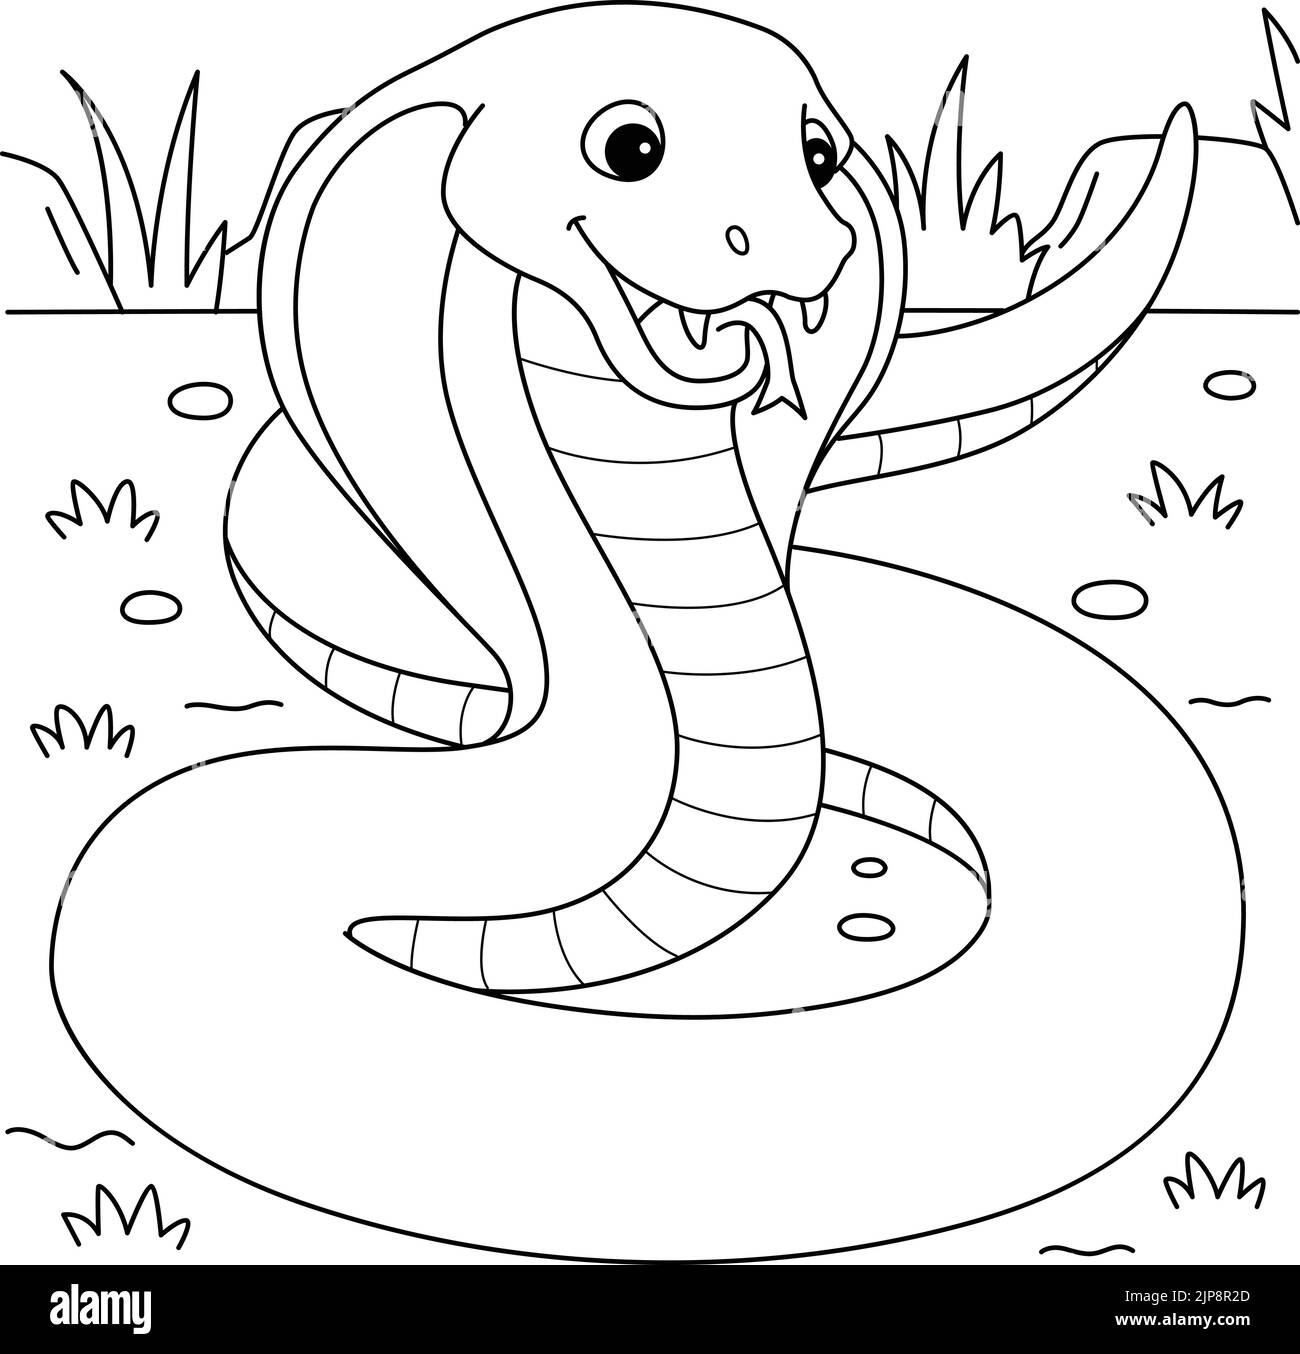 Cobra snake coloring book hi